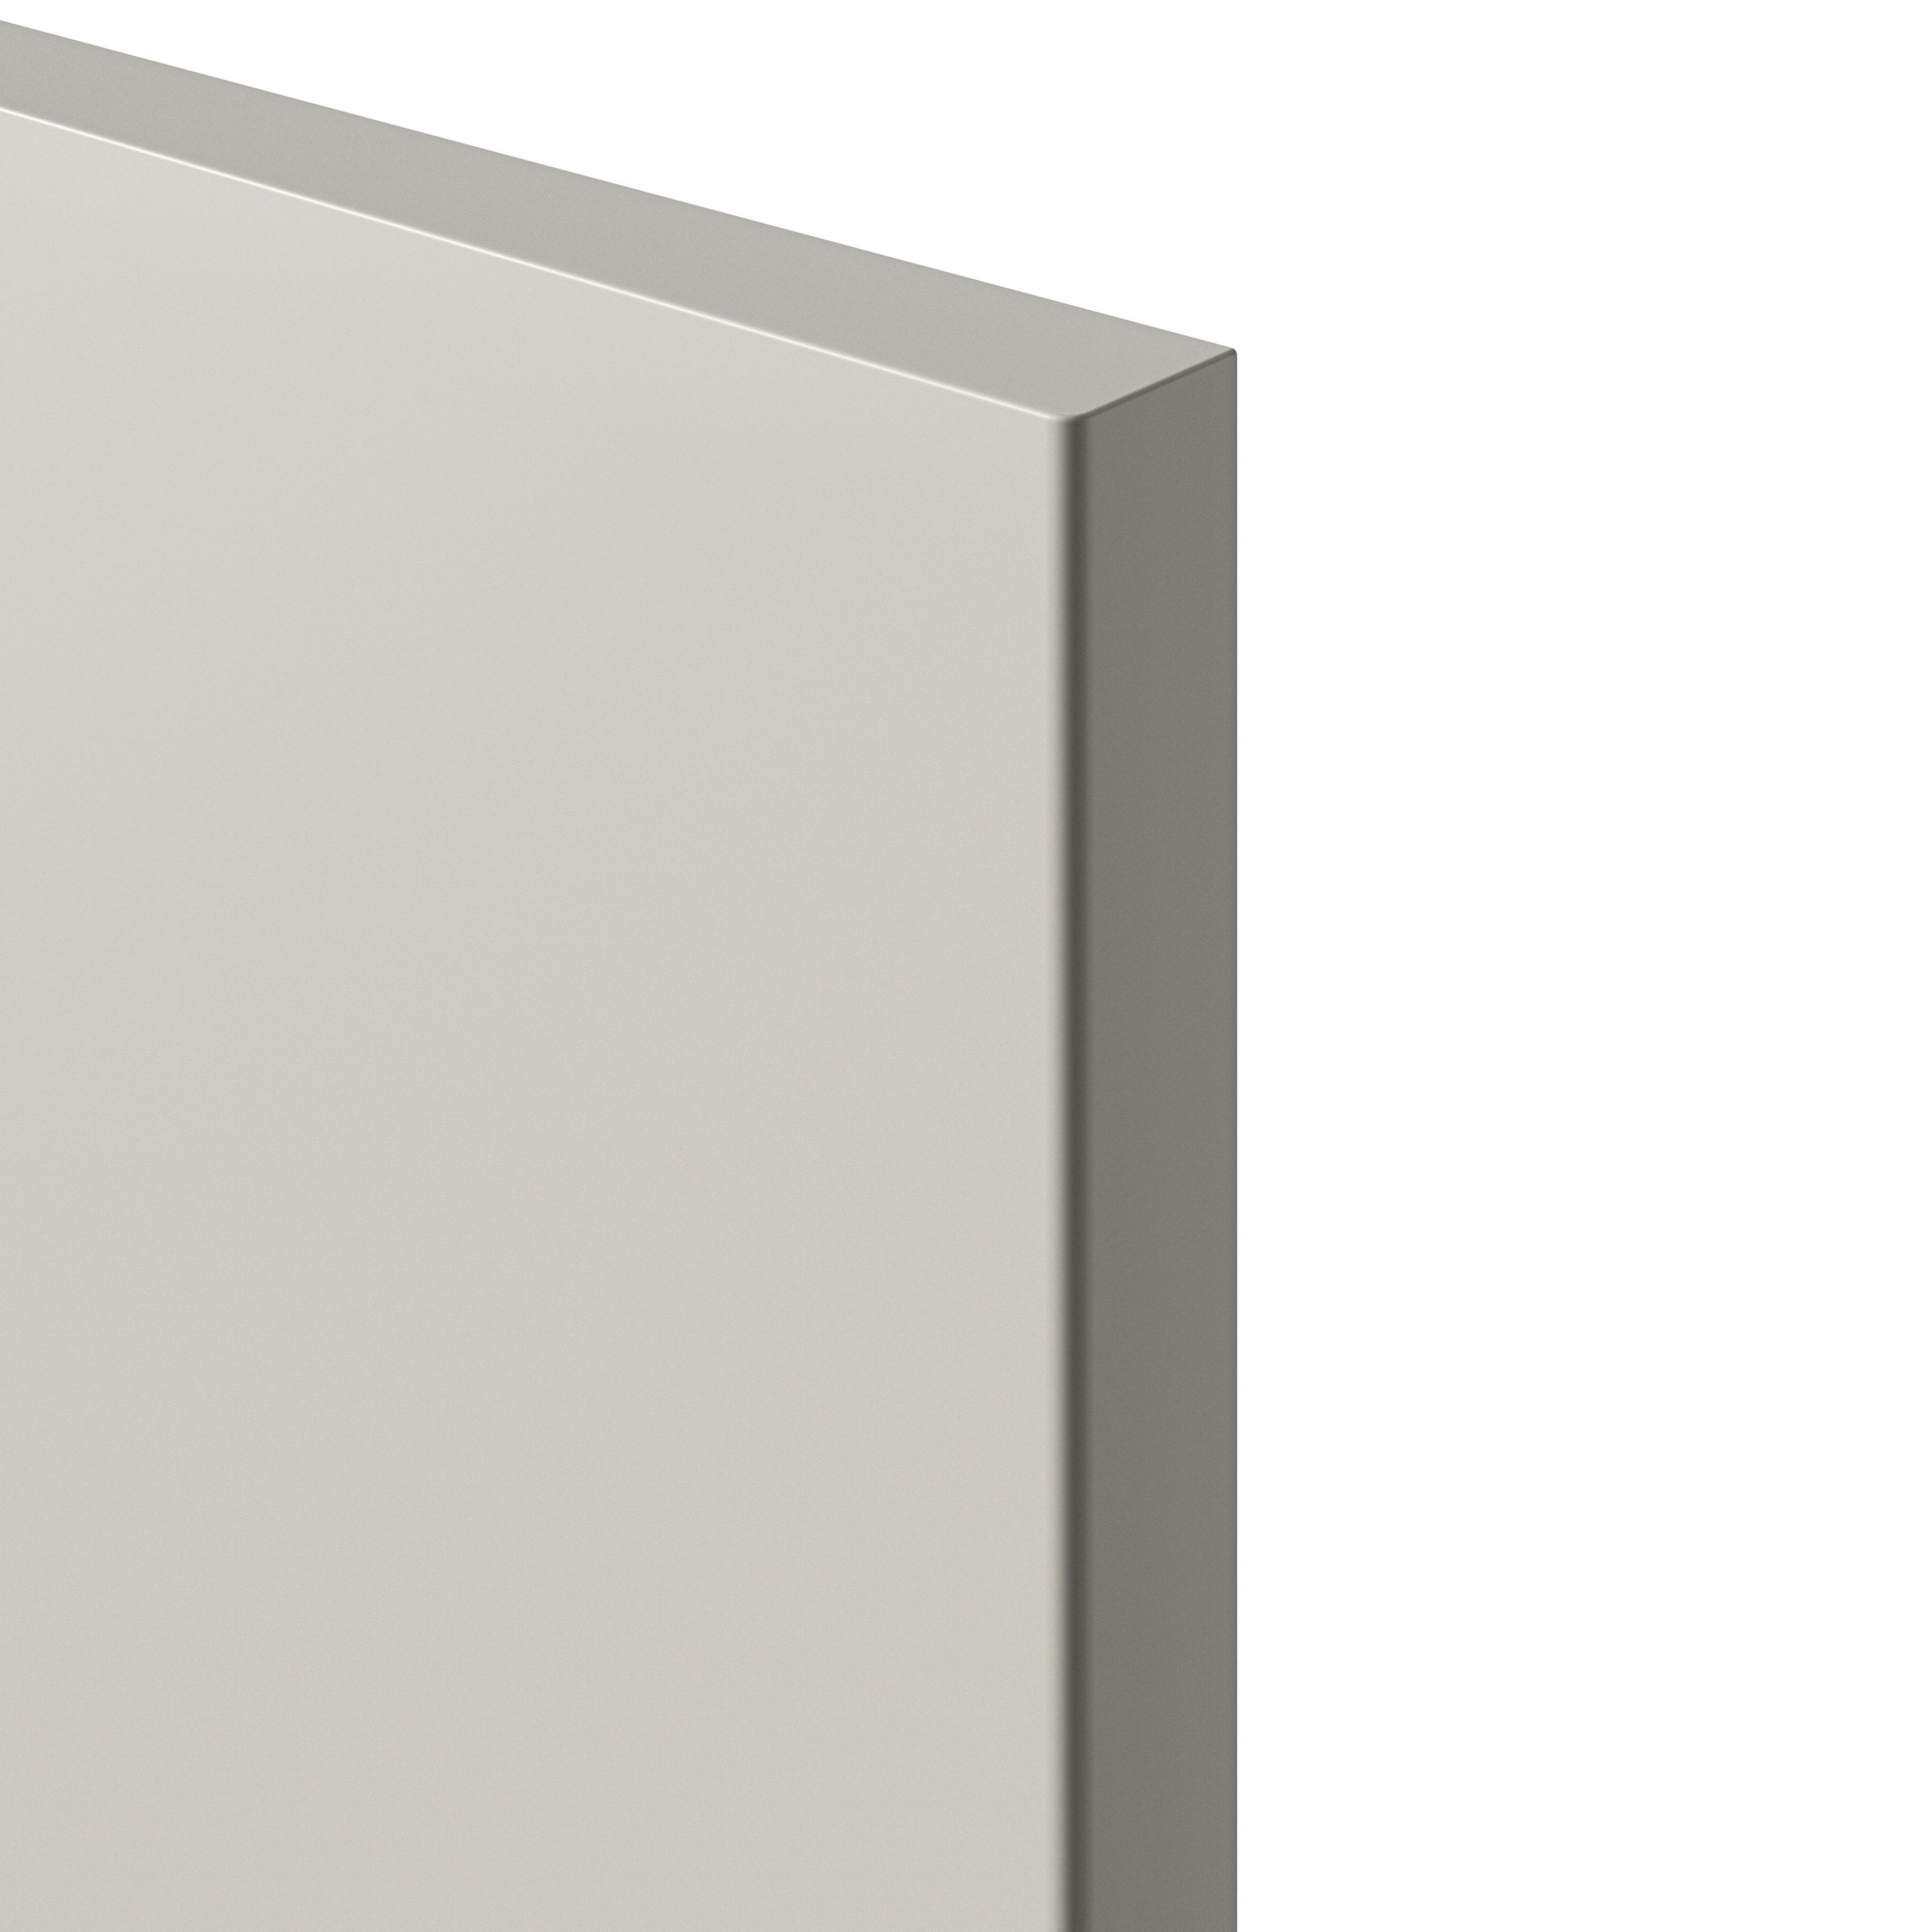 GoodHome Stevia Matt sandstone Drawer front, bridging door & bi fold door, (W)400mm (H)356mm (T)18mm